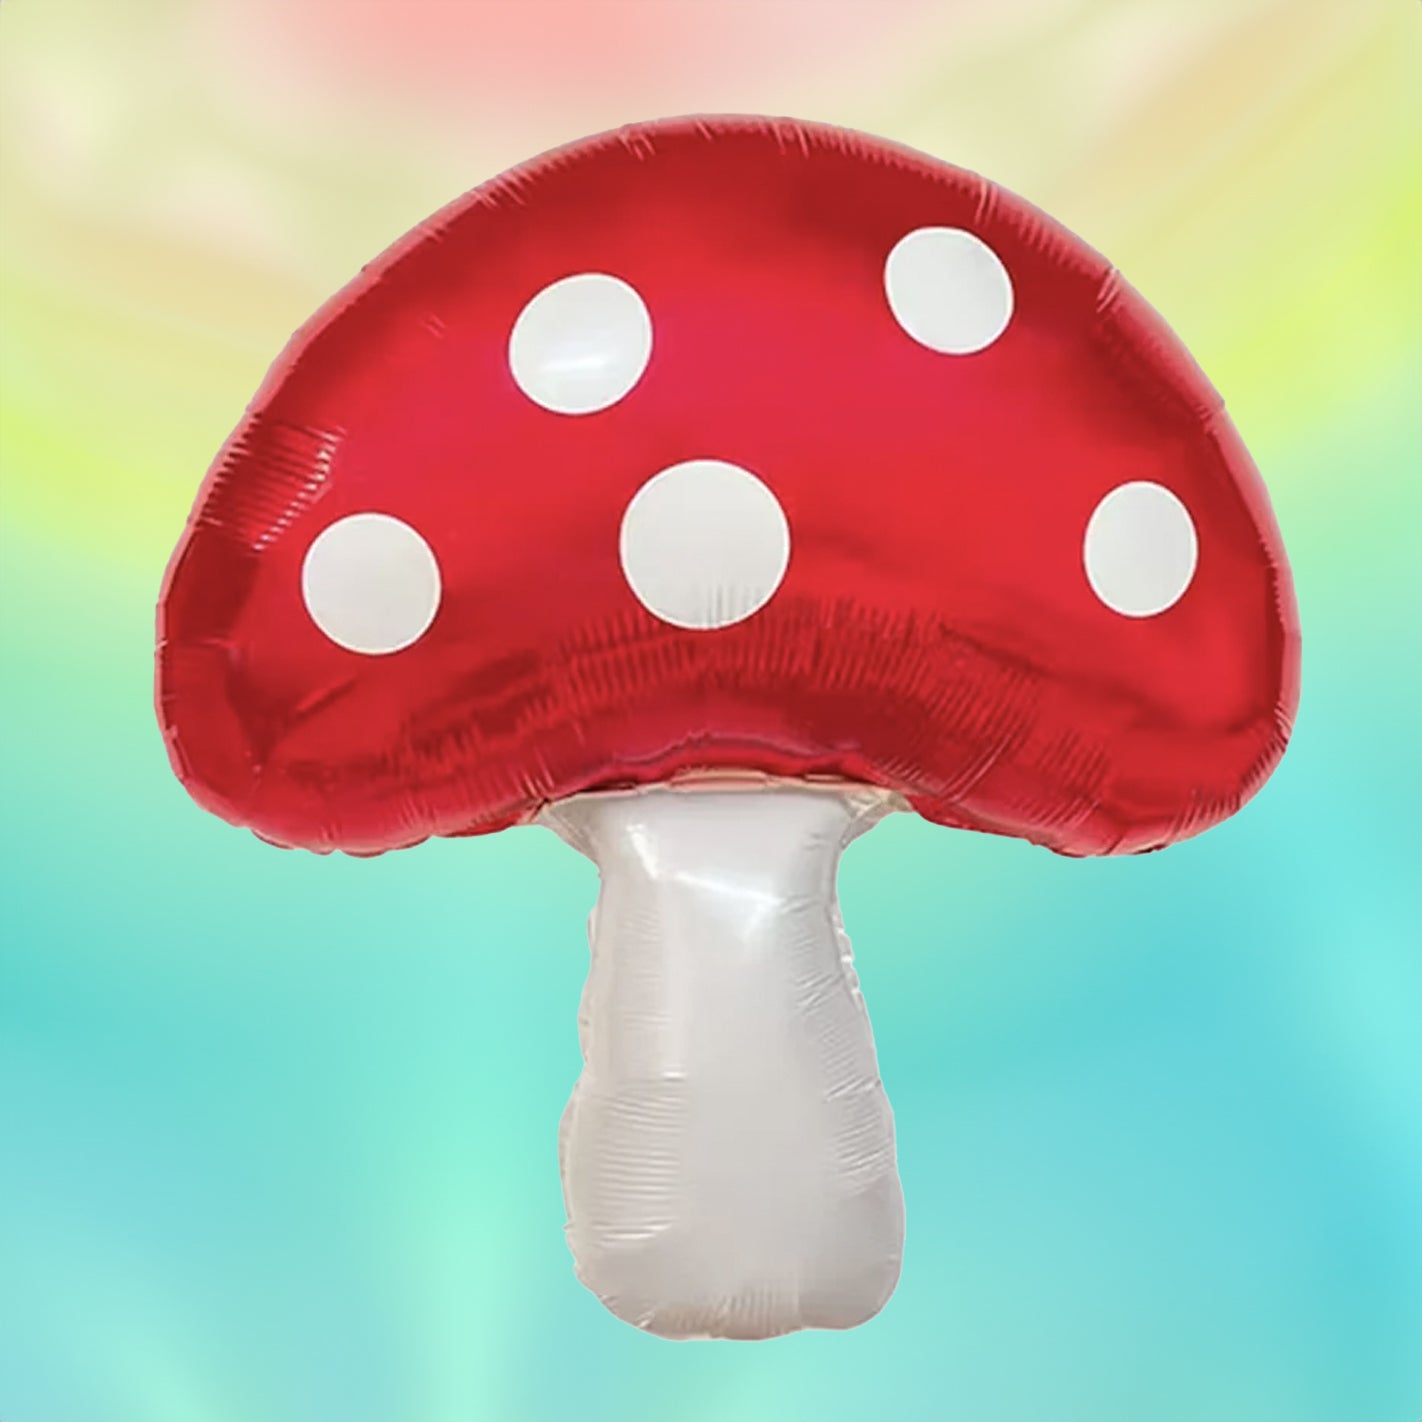 Polkadot Mushroom Balloon